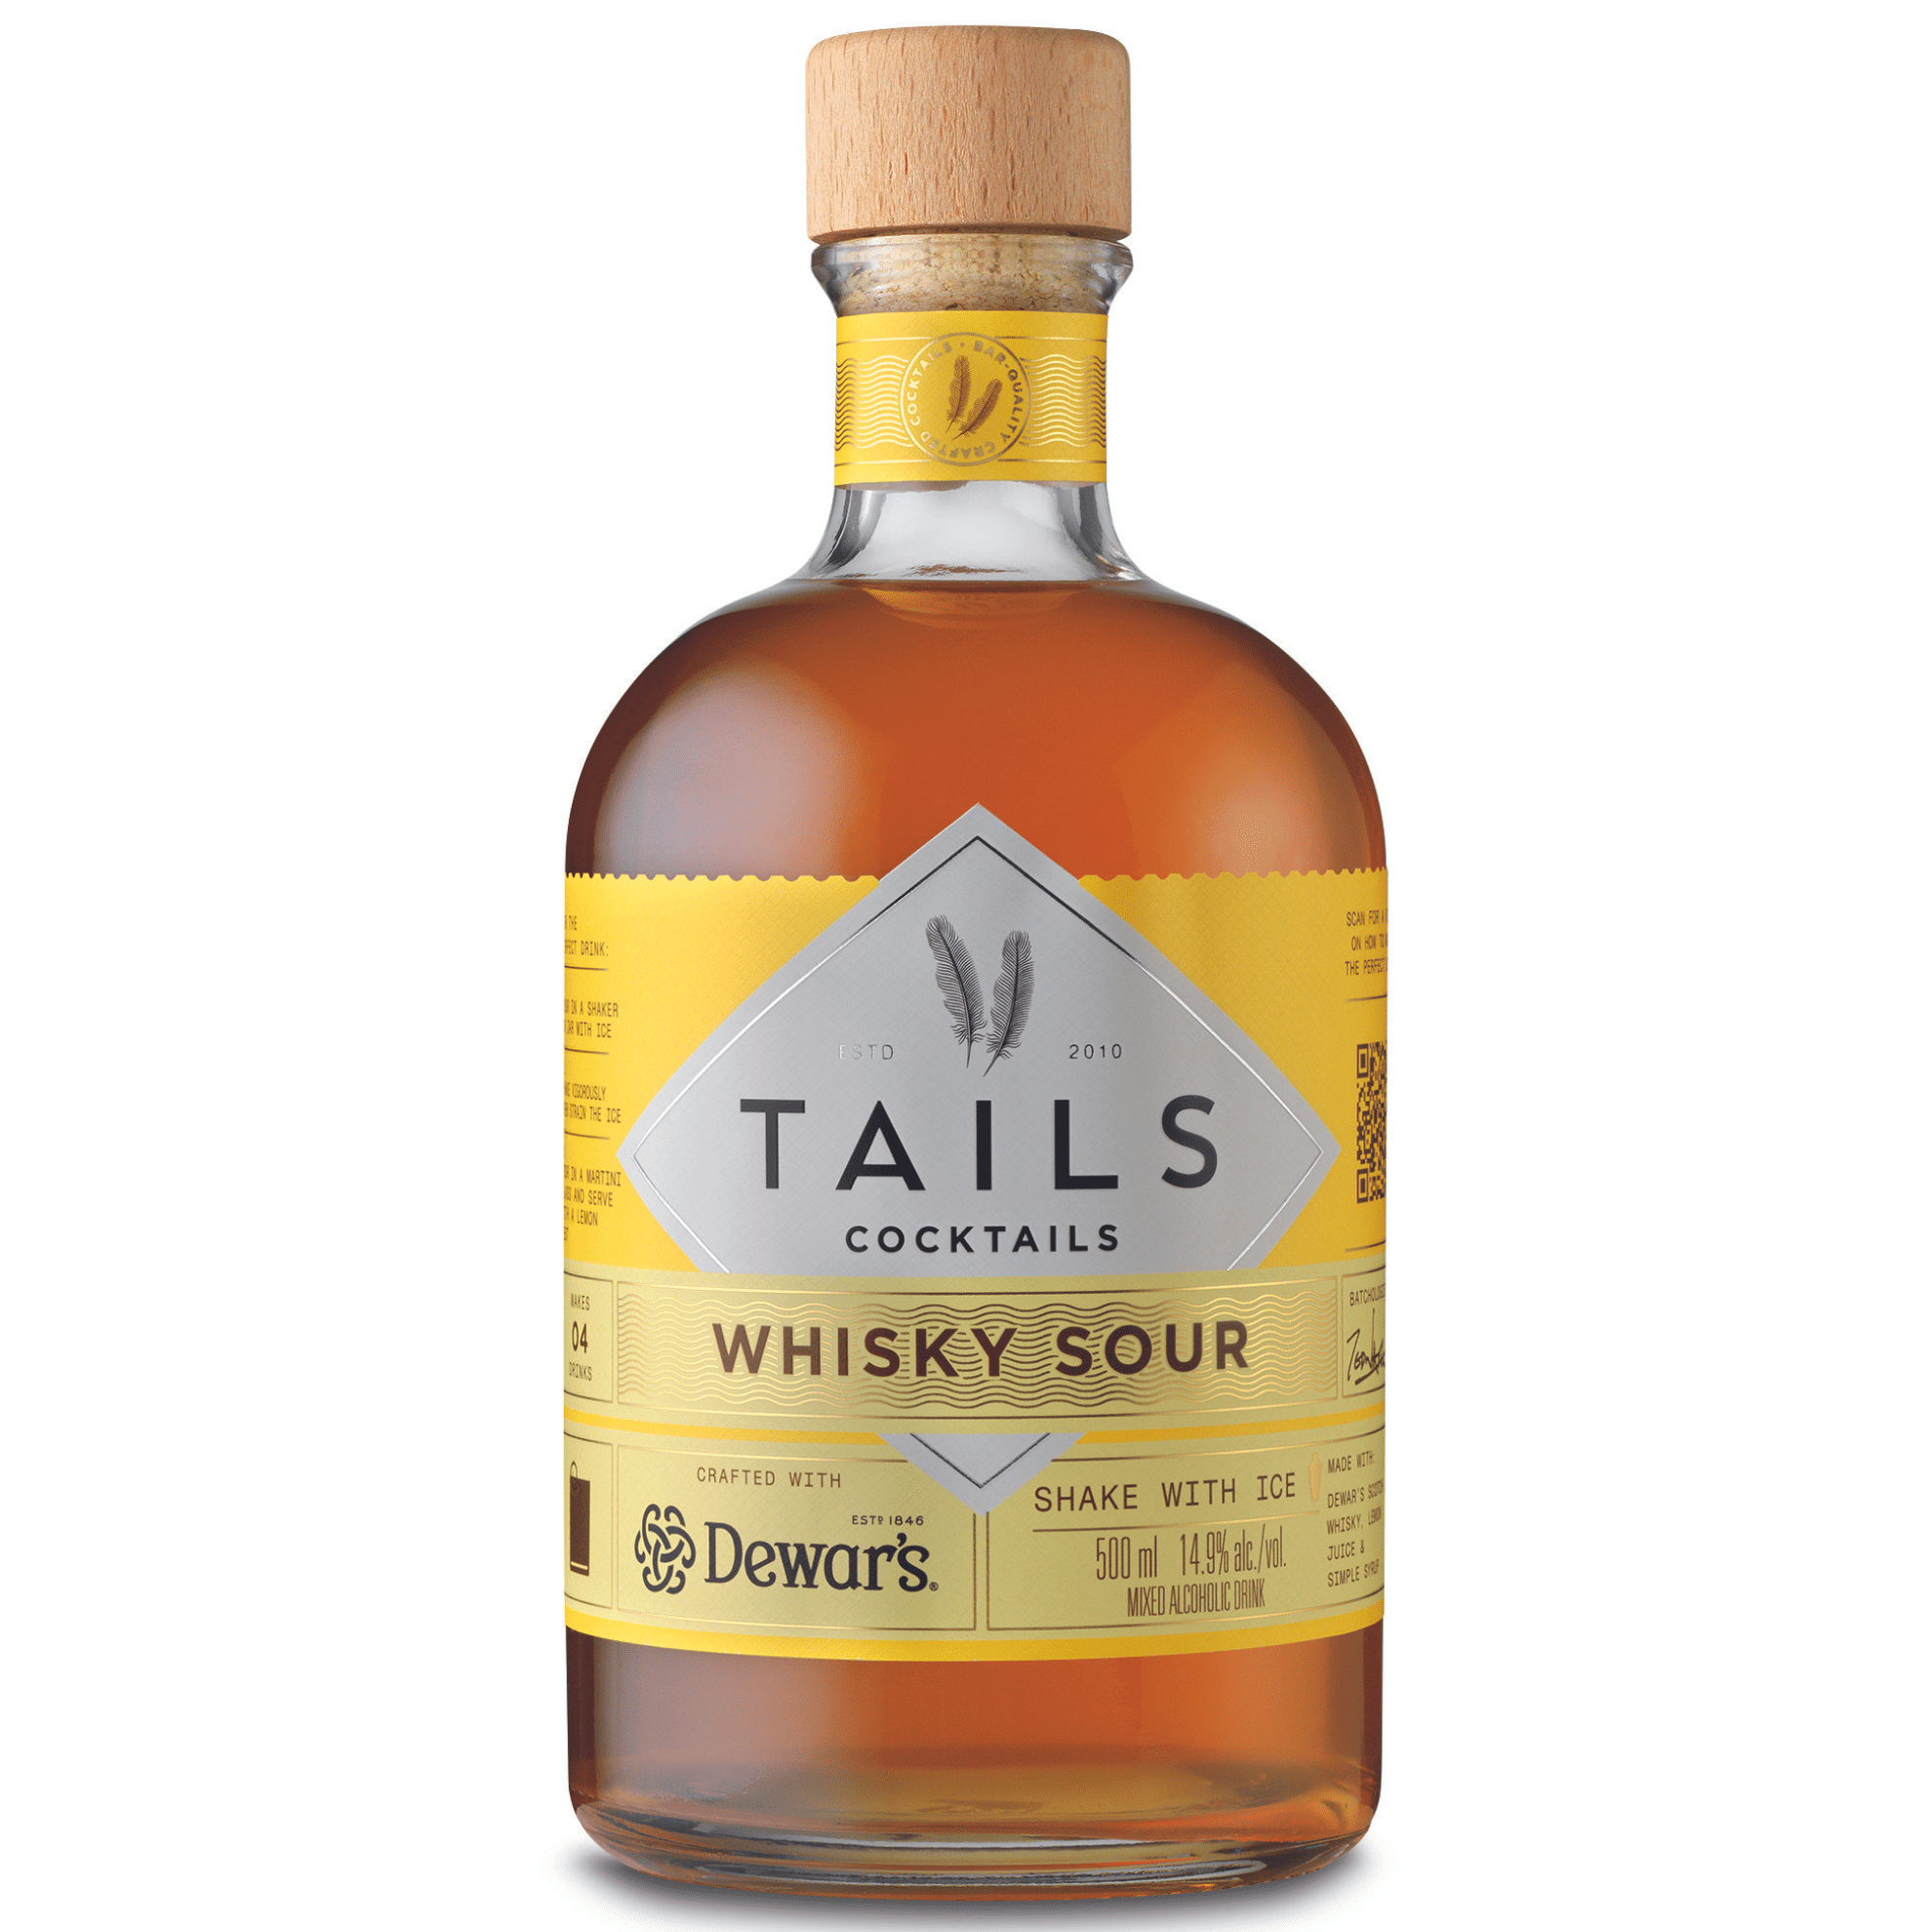 Tails Cocktails Whisky Sour 14,90% 0,5l